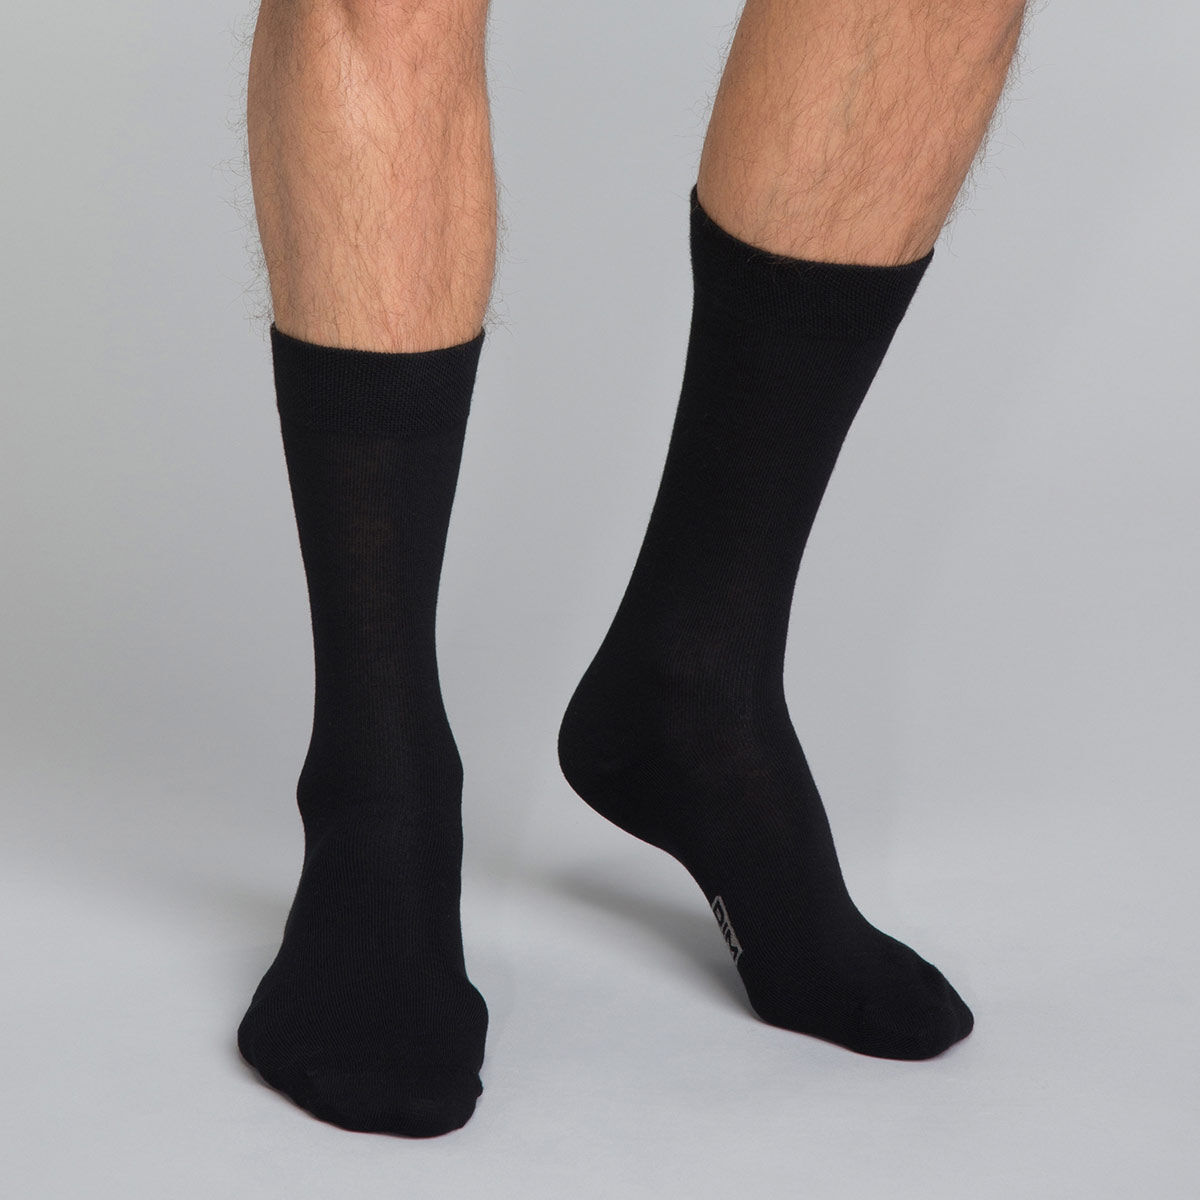 Mysocks 5 paires de chaussettes pour homme Noir uni coton peigné extra fin 